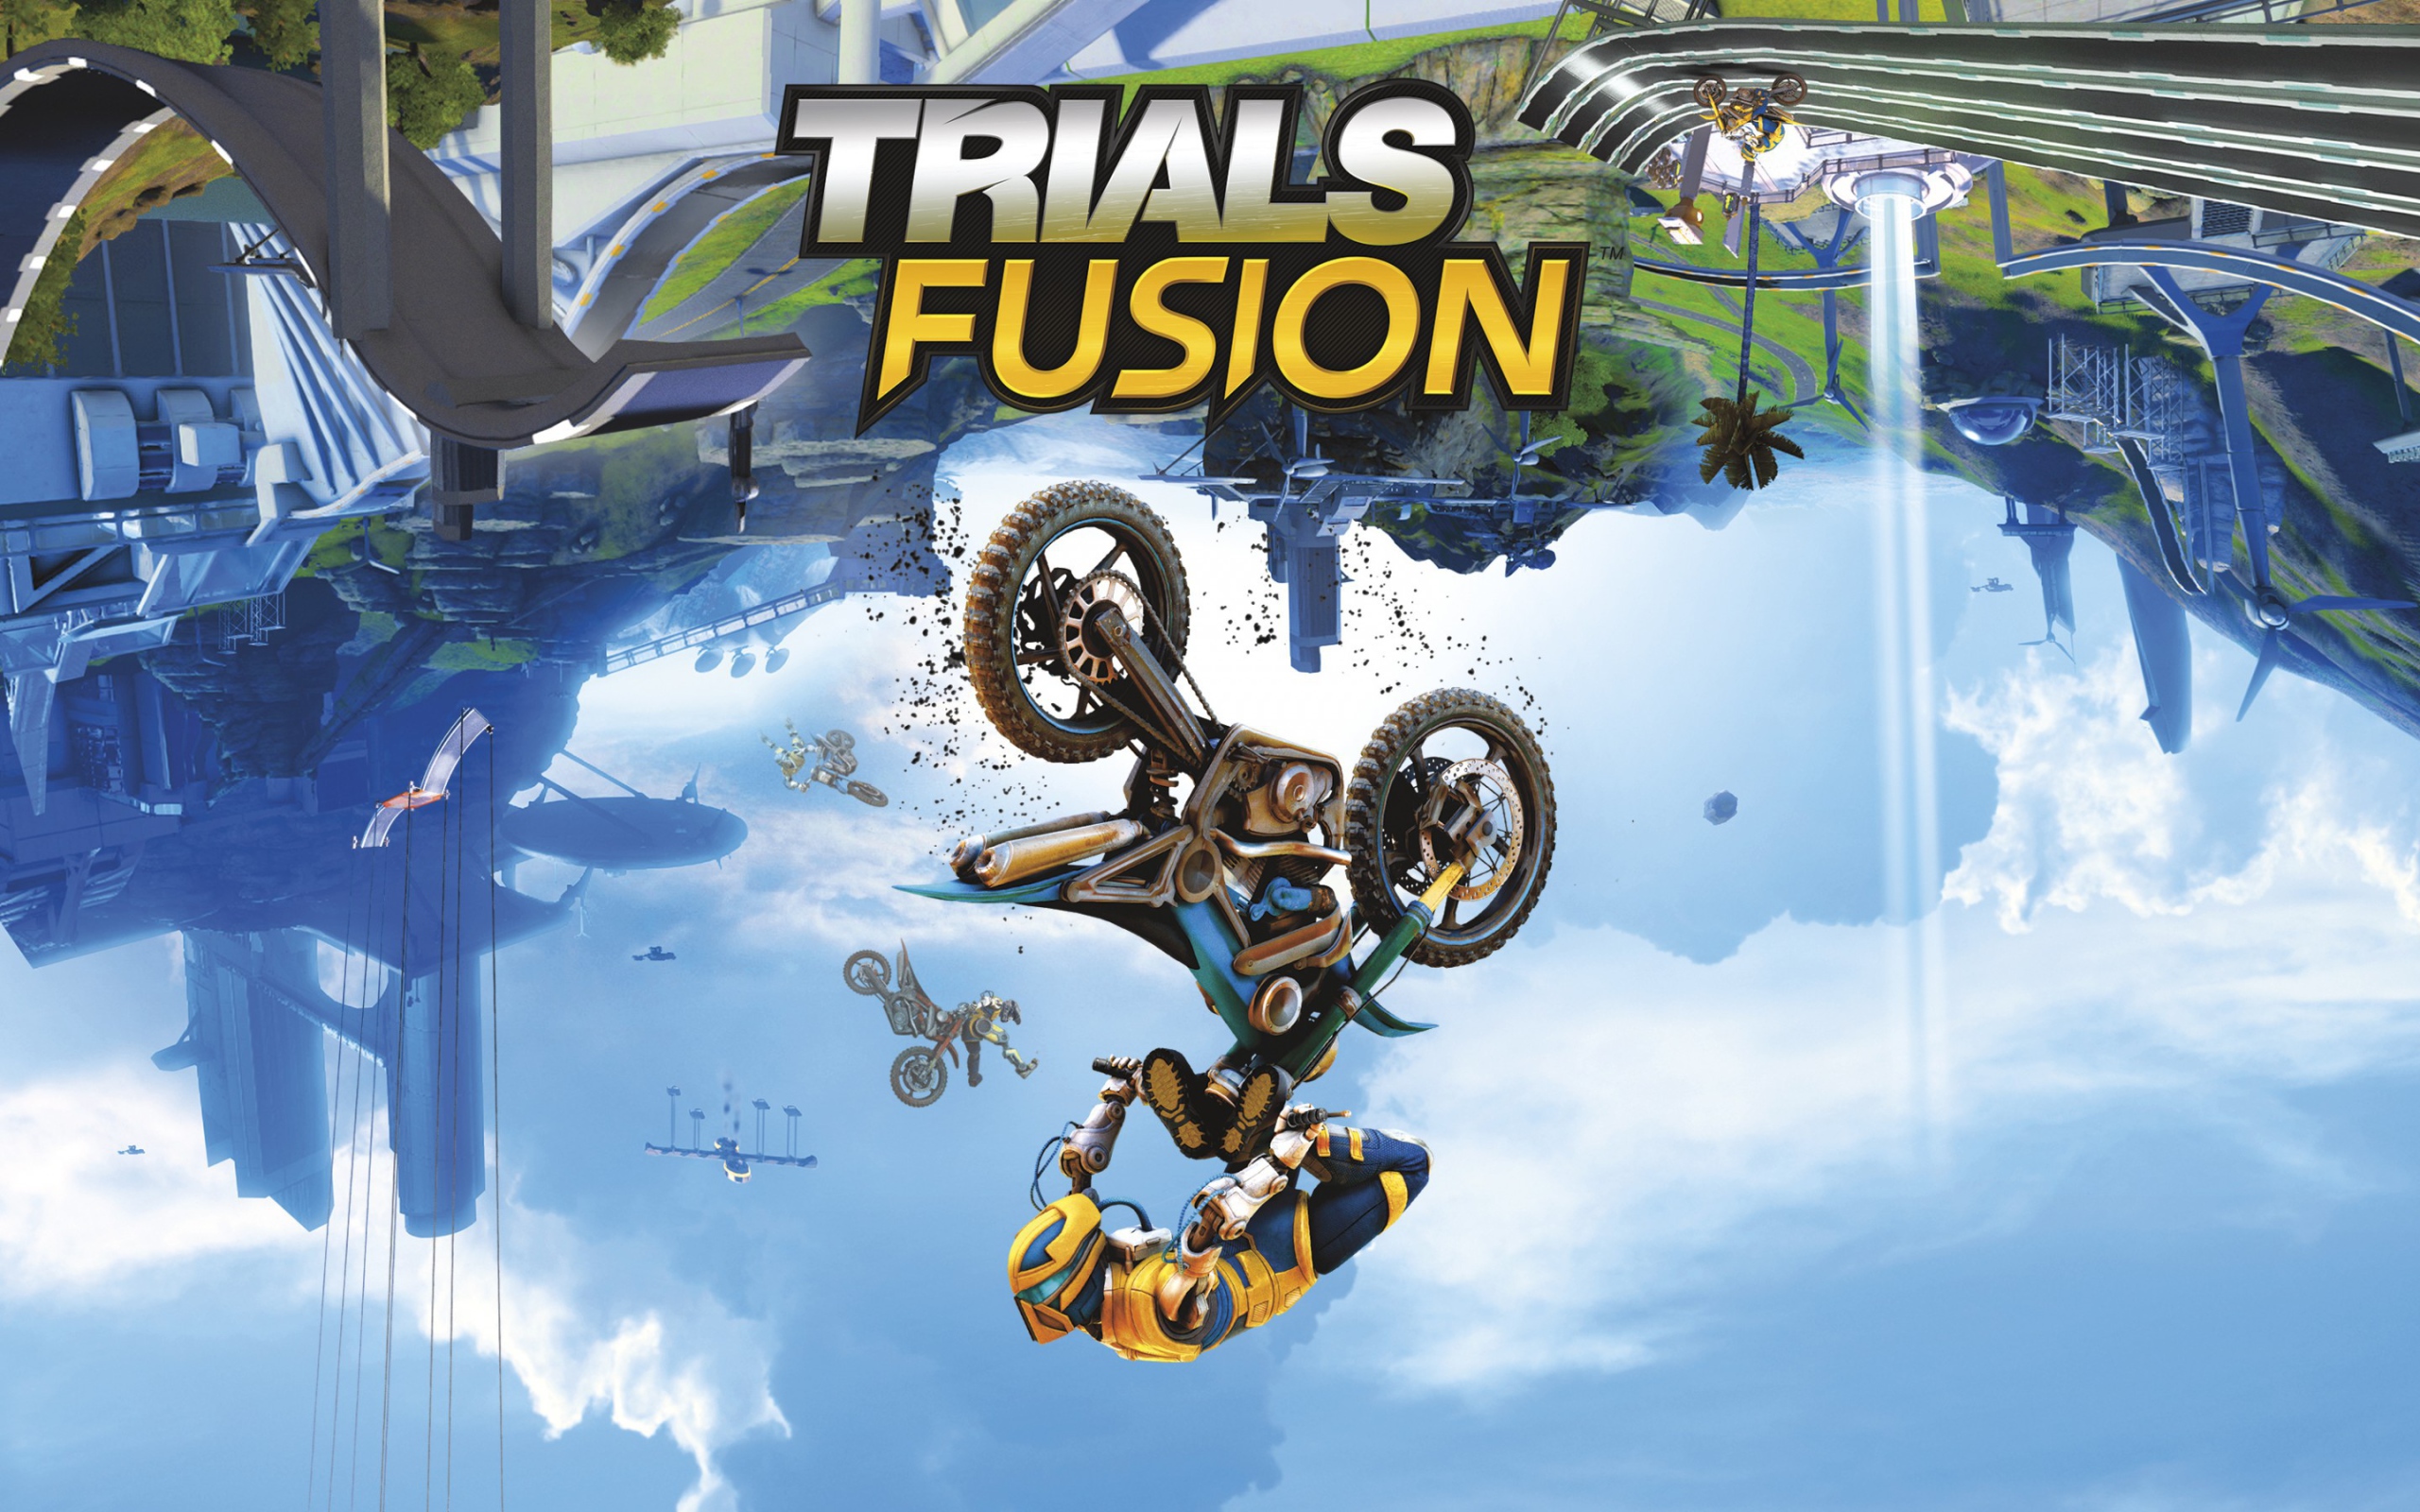 Игра Trials fusion